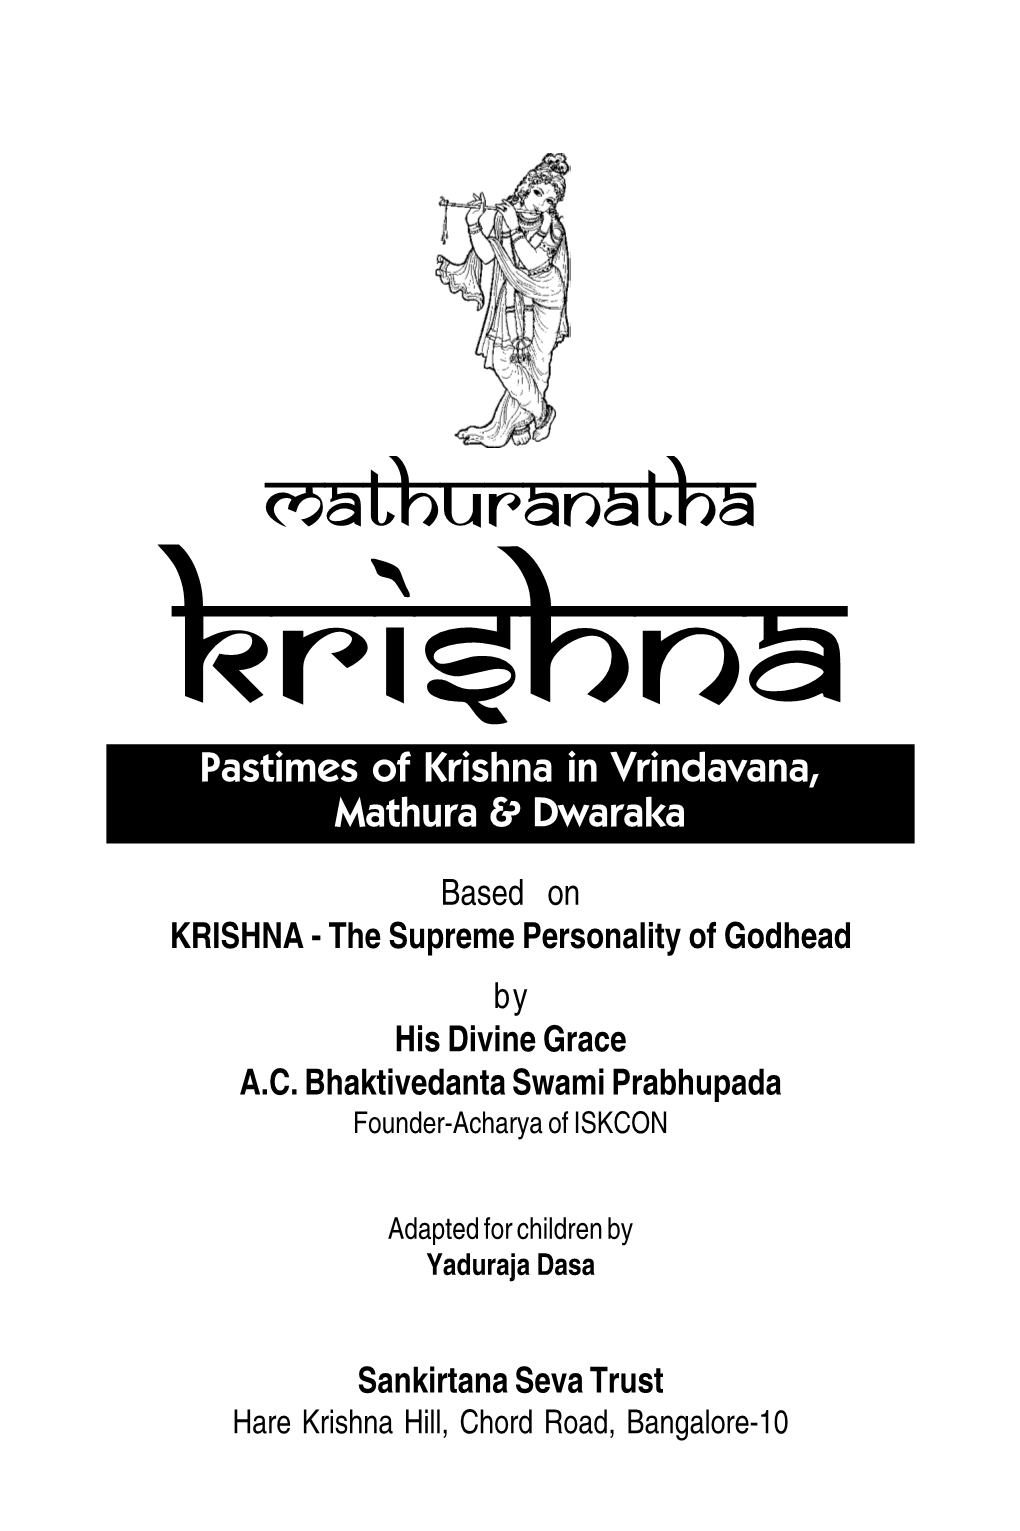 Mathuranatha KRISHNA Pastimes of Krishna in Vrindavana, Mathura & Dwaraka